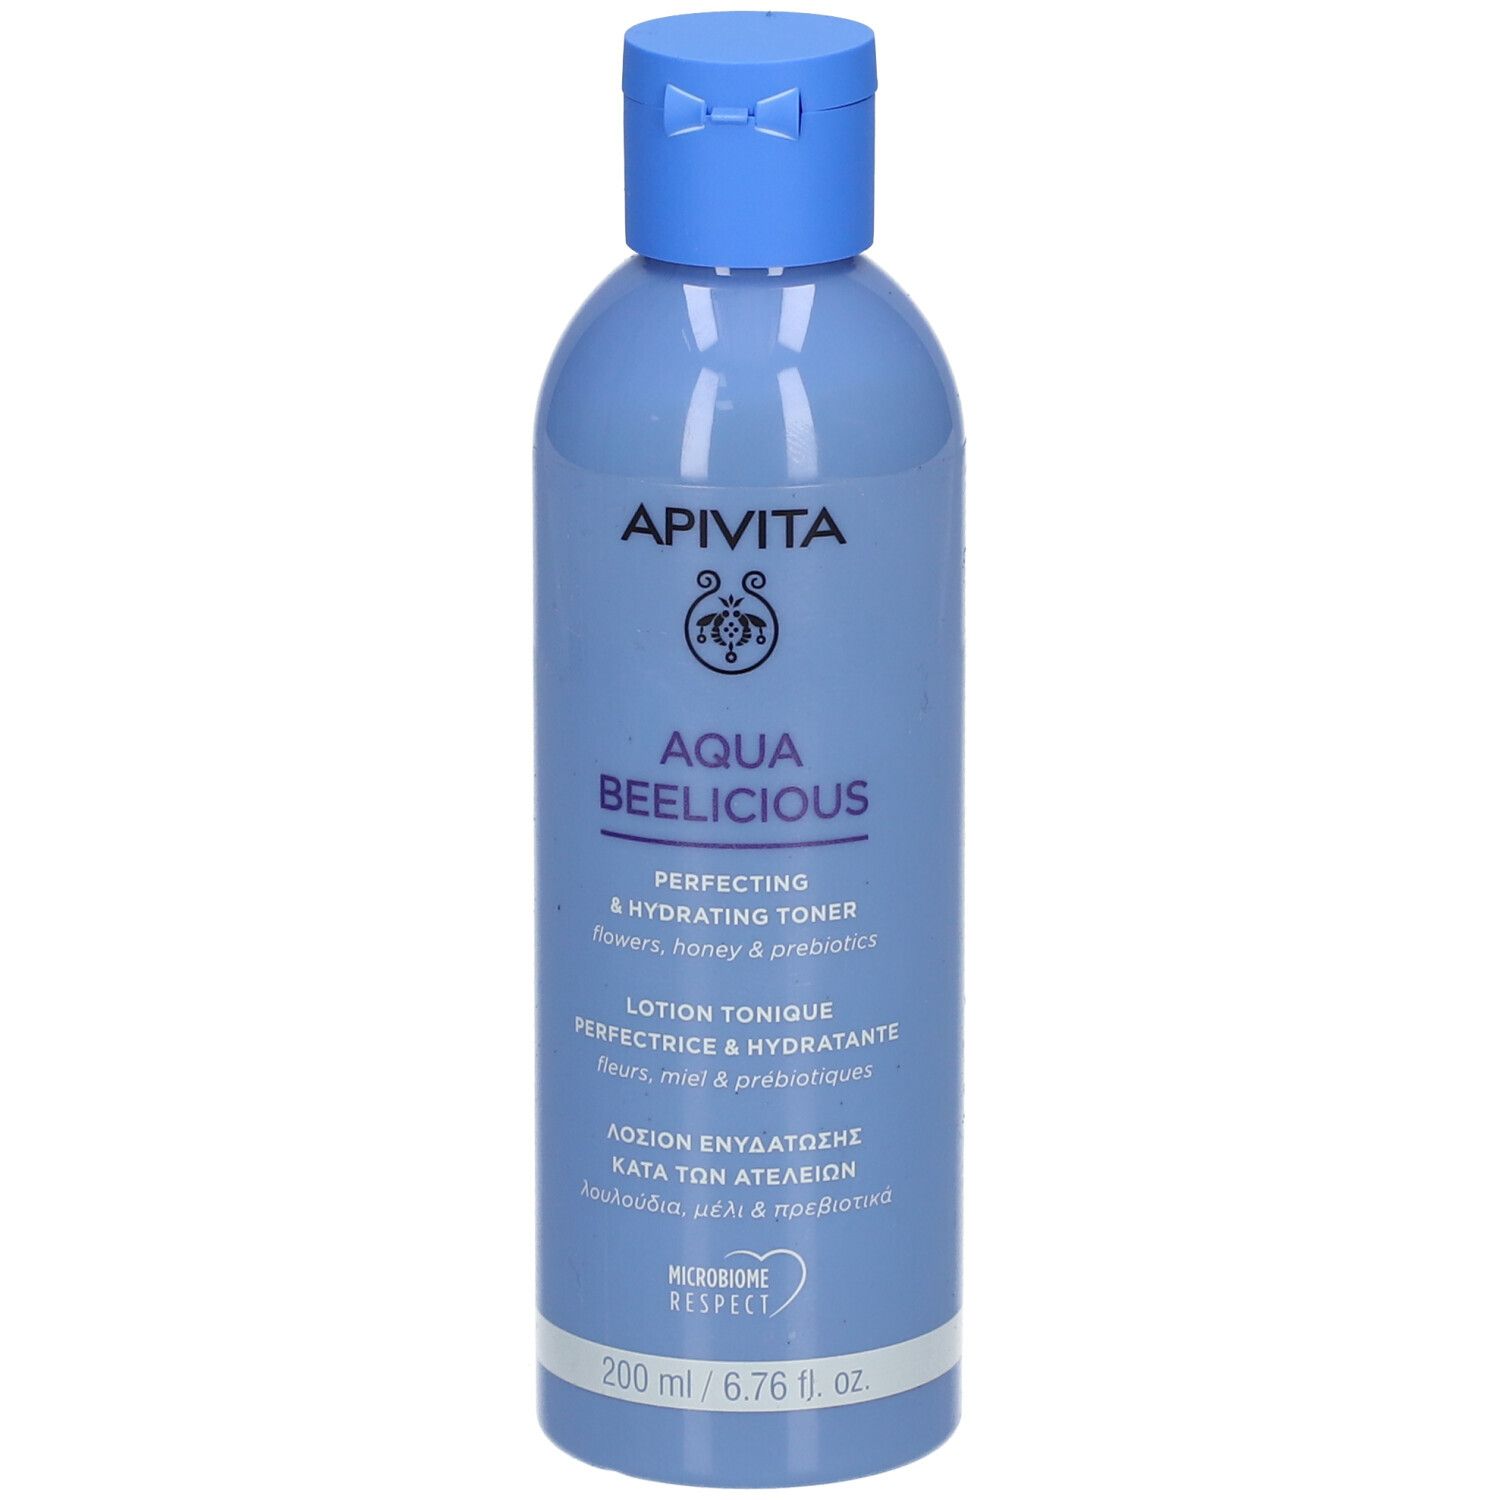 Apivita Aqua Beelicious Lotion tonique Perfectrice & Hydratante